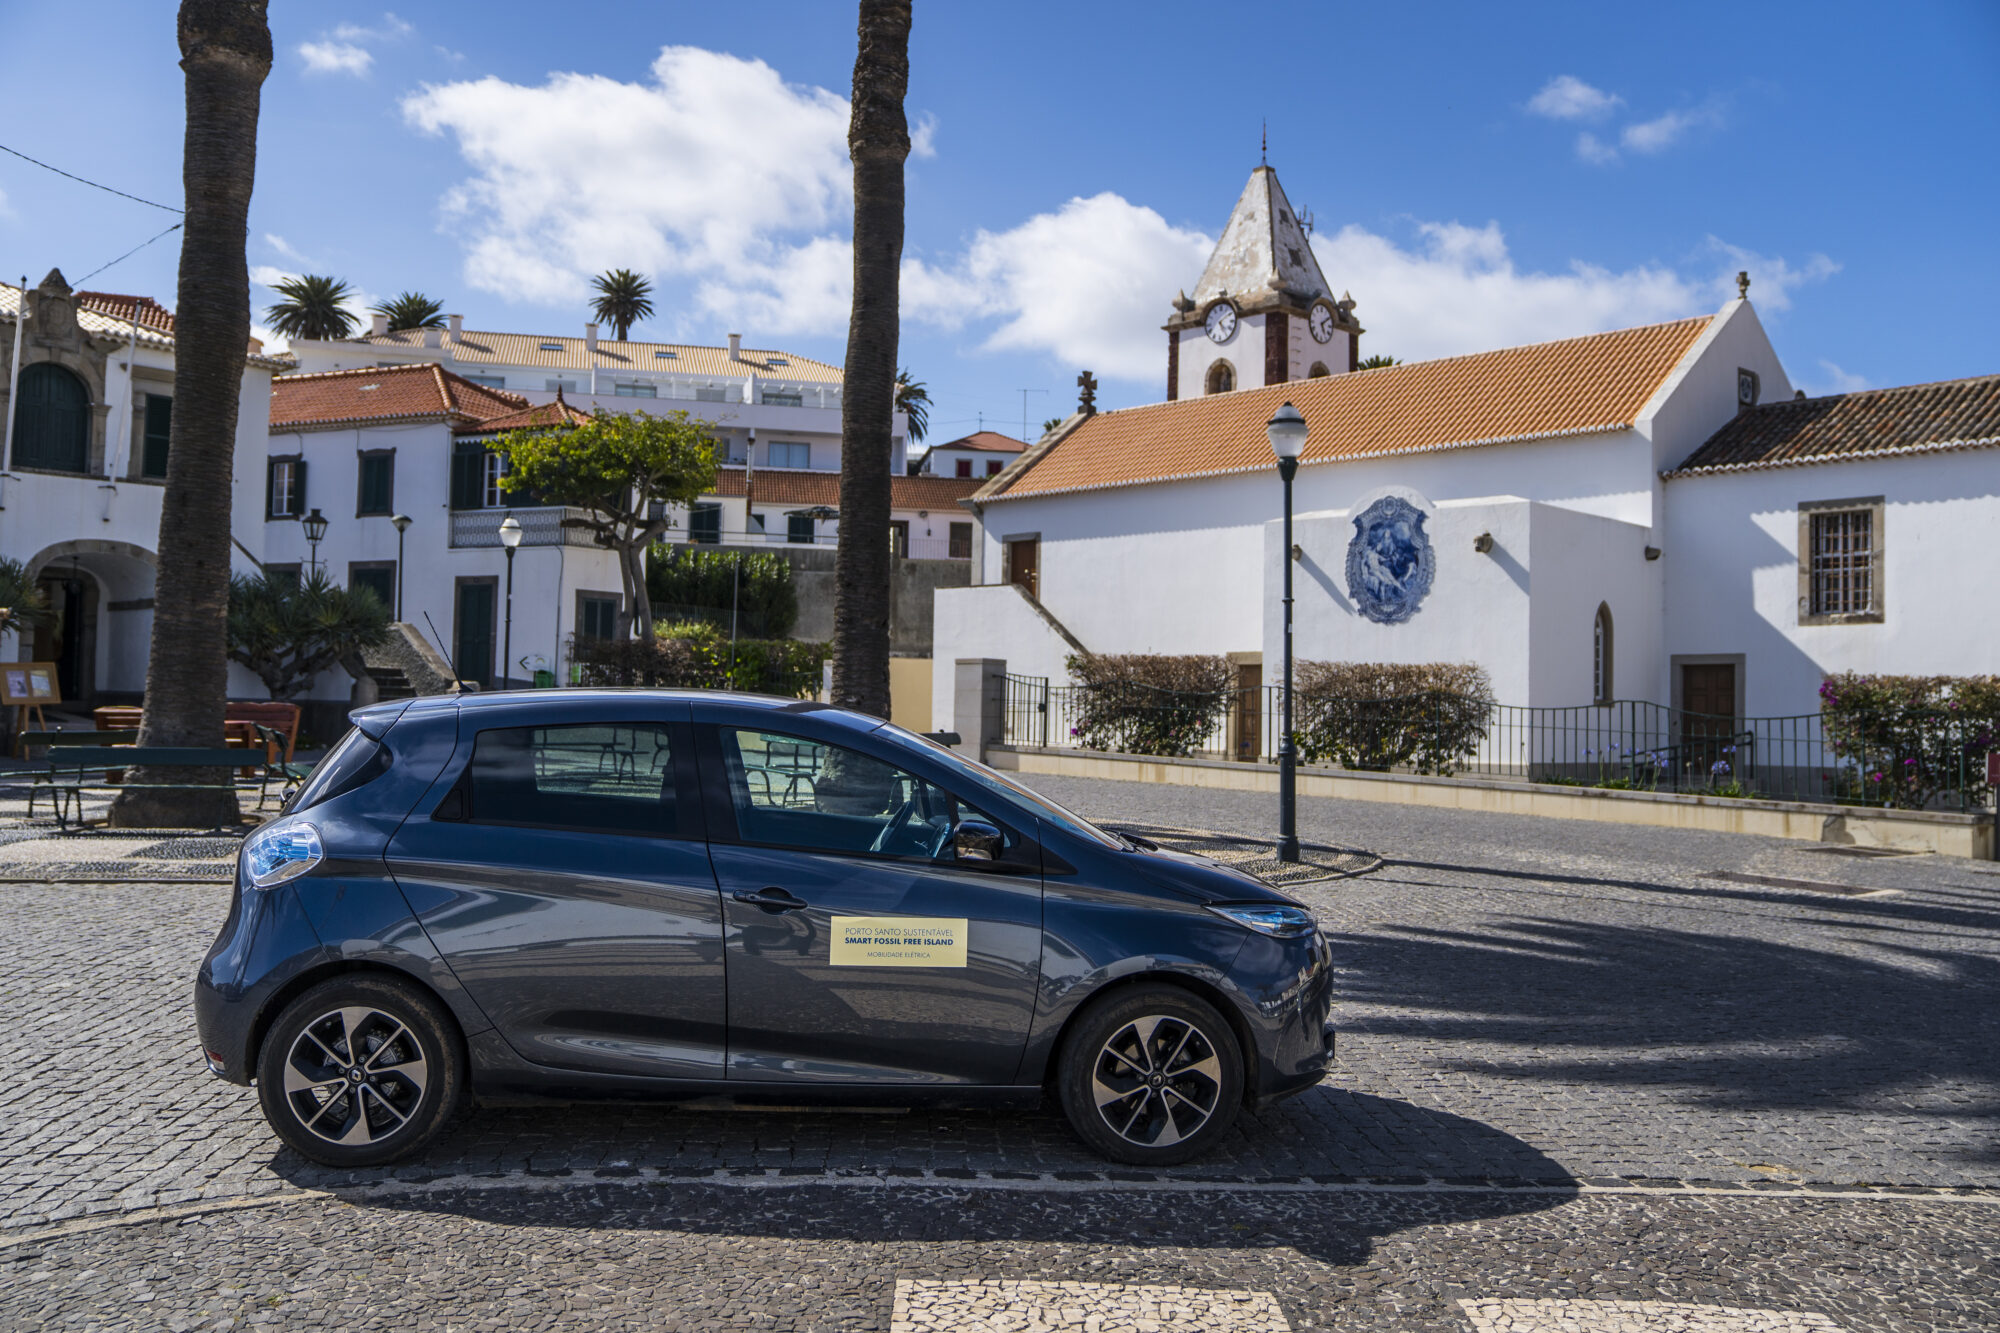 2019 - Ecosystème Porto Santo